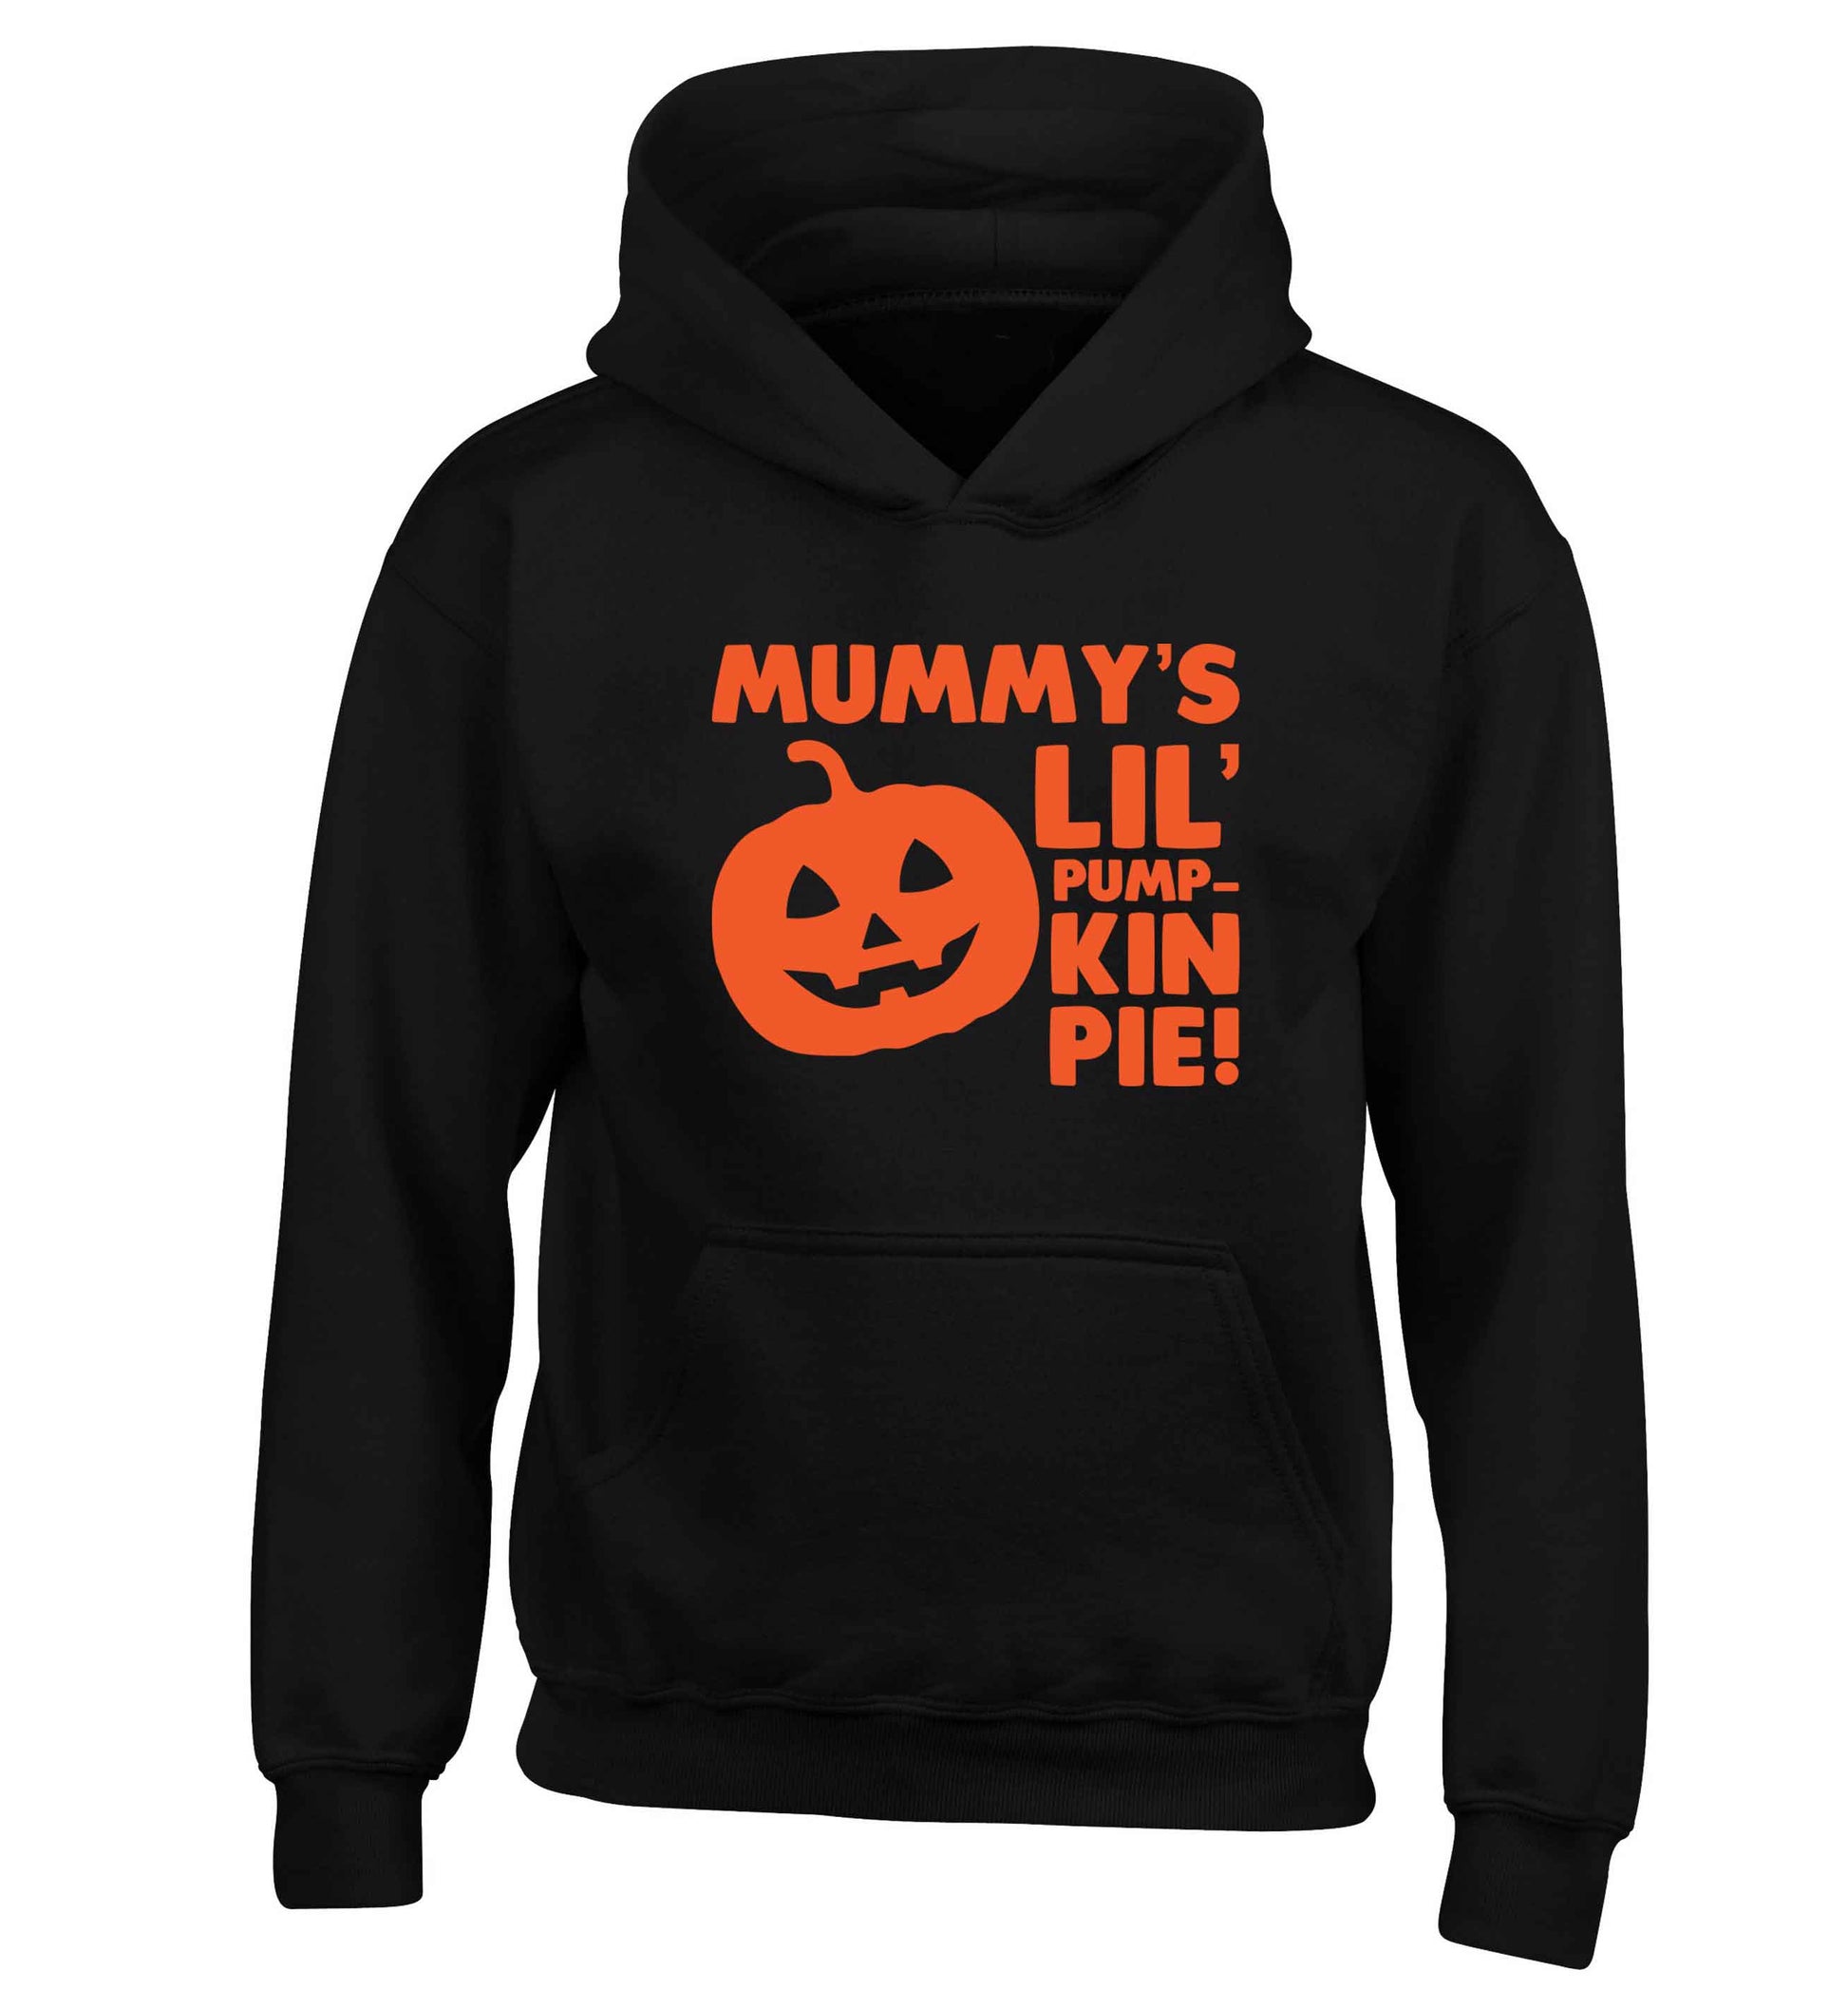 Mummy's lil' pumpkin pie children's black hoodie 12-13 Years